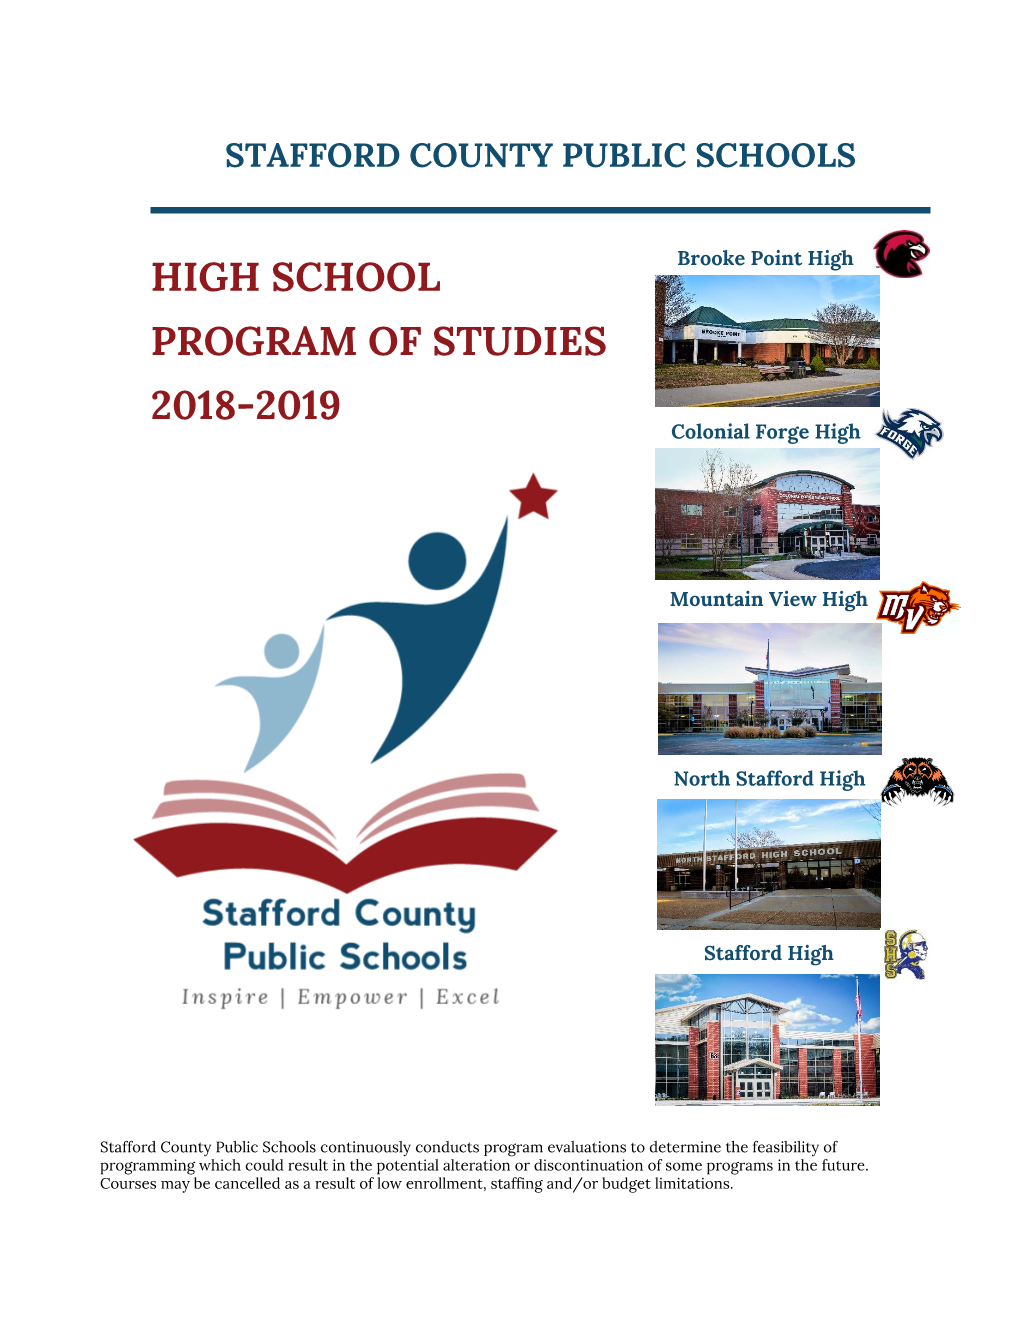 High School Program of Studies 2018-2019